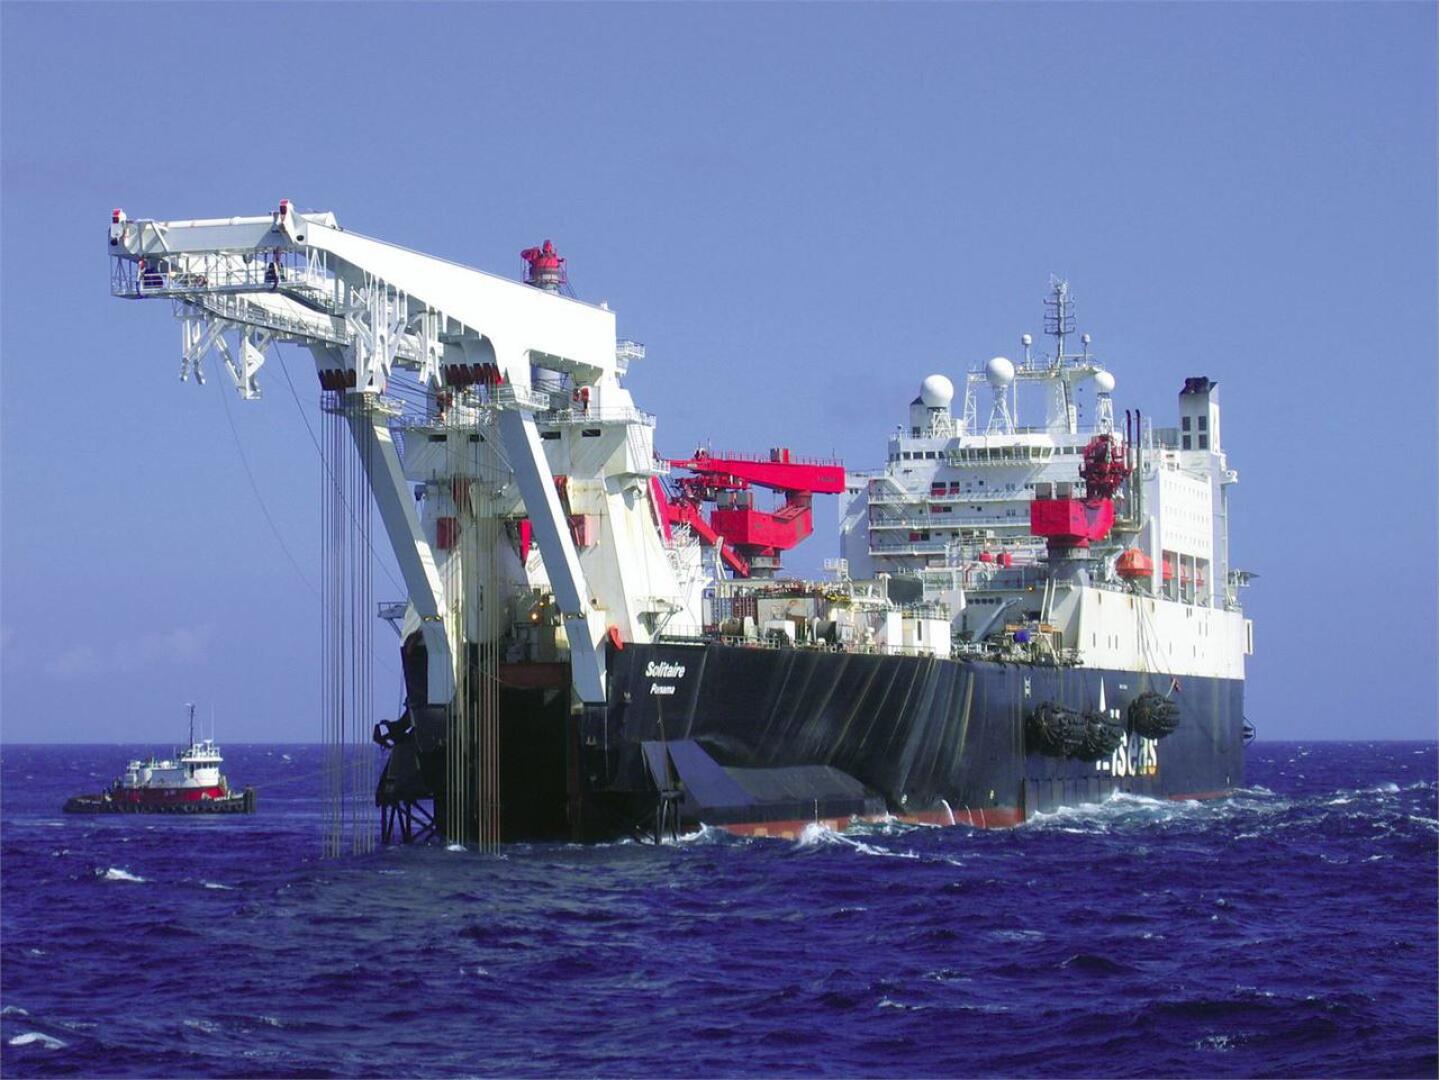 Maailman suurin putkenlaskualus Solitaire työssään 21. lokakuuta 2010, kun laiva aloitti Nord Streamin laskutyöt. Kuva: Lehtikuva/Handout/Nord Stream